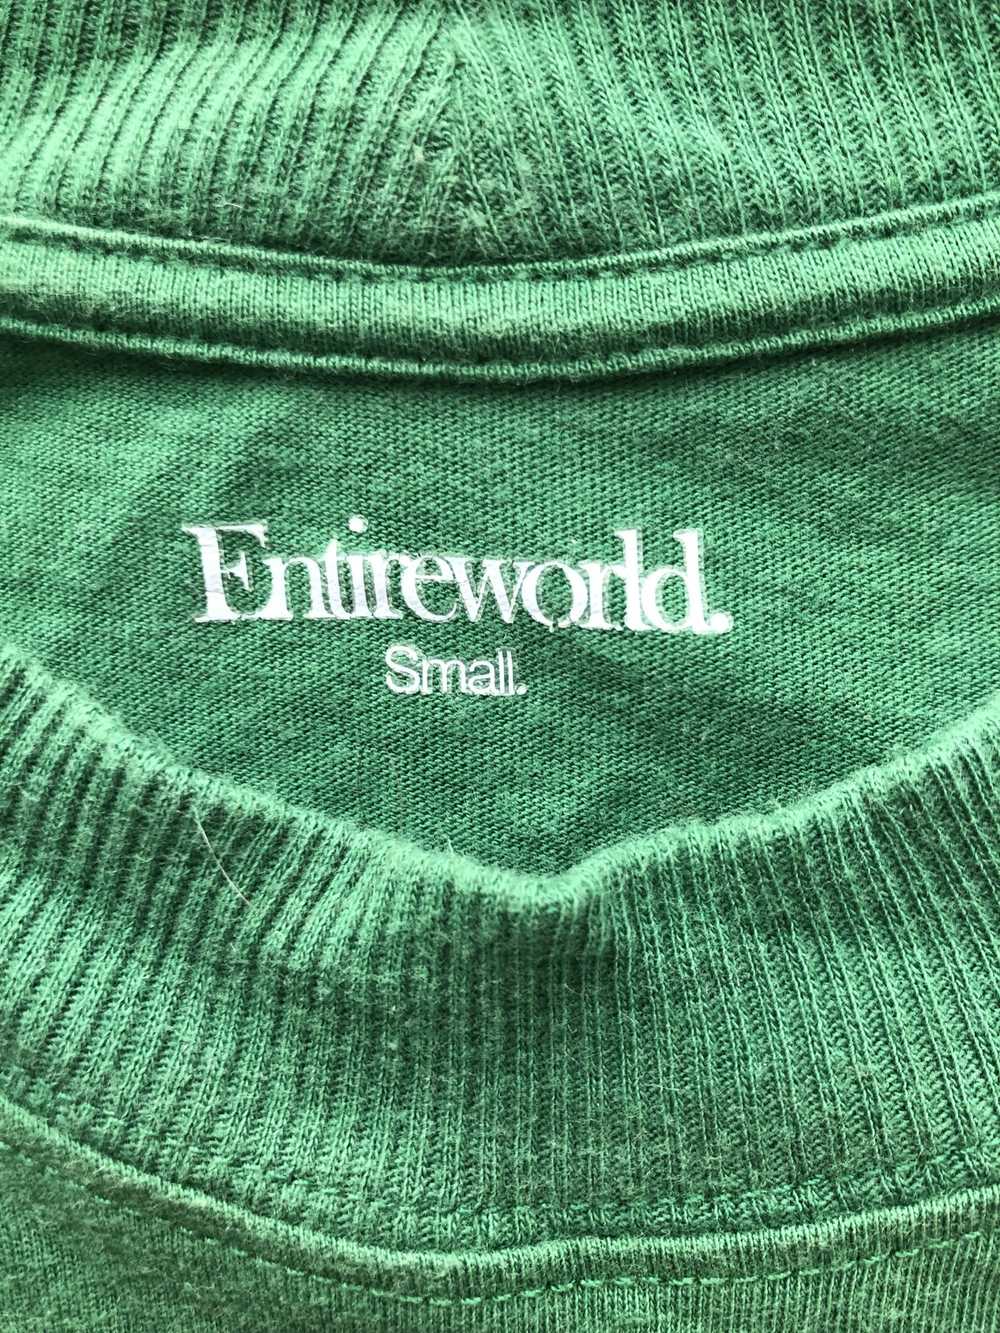 Entireworld Type C, Version 9 Long Sleeve T Shirt - image 3